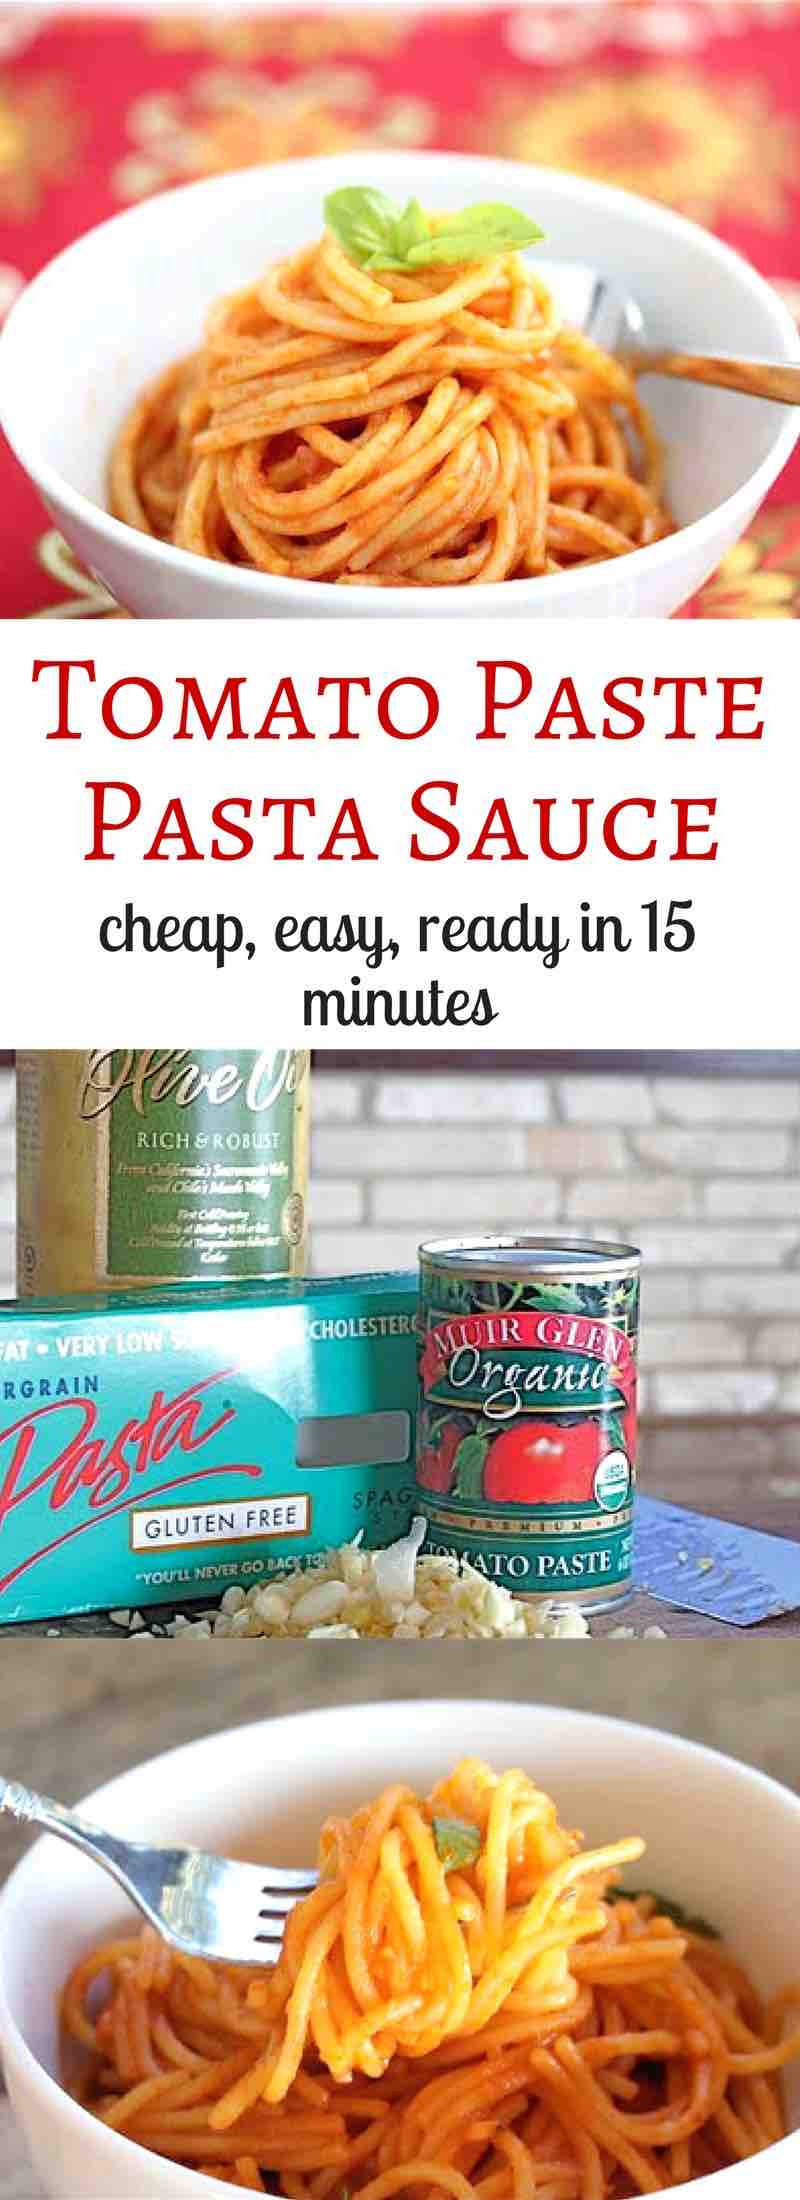 Tomato Sauce From Paste
 Easy Tomato Paste Pasta Sauce